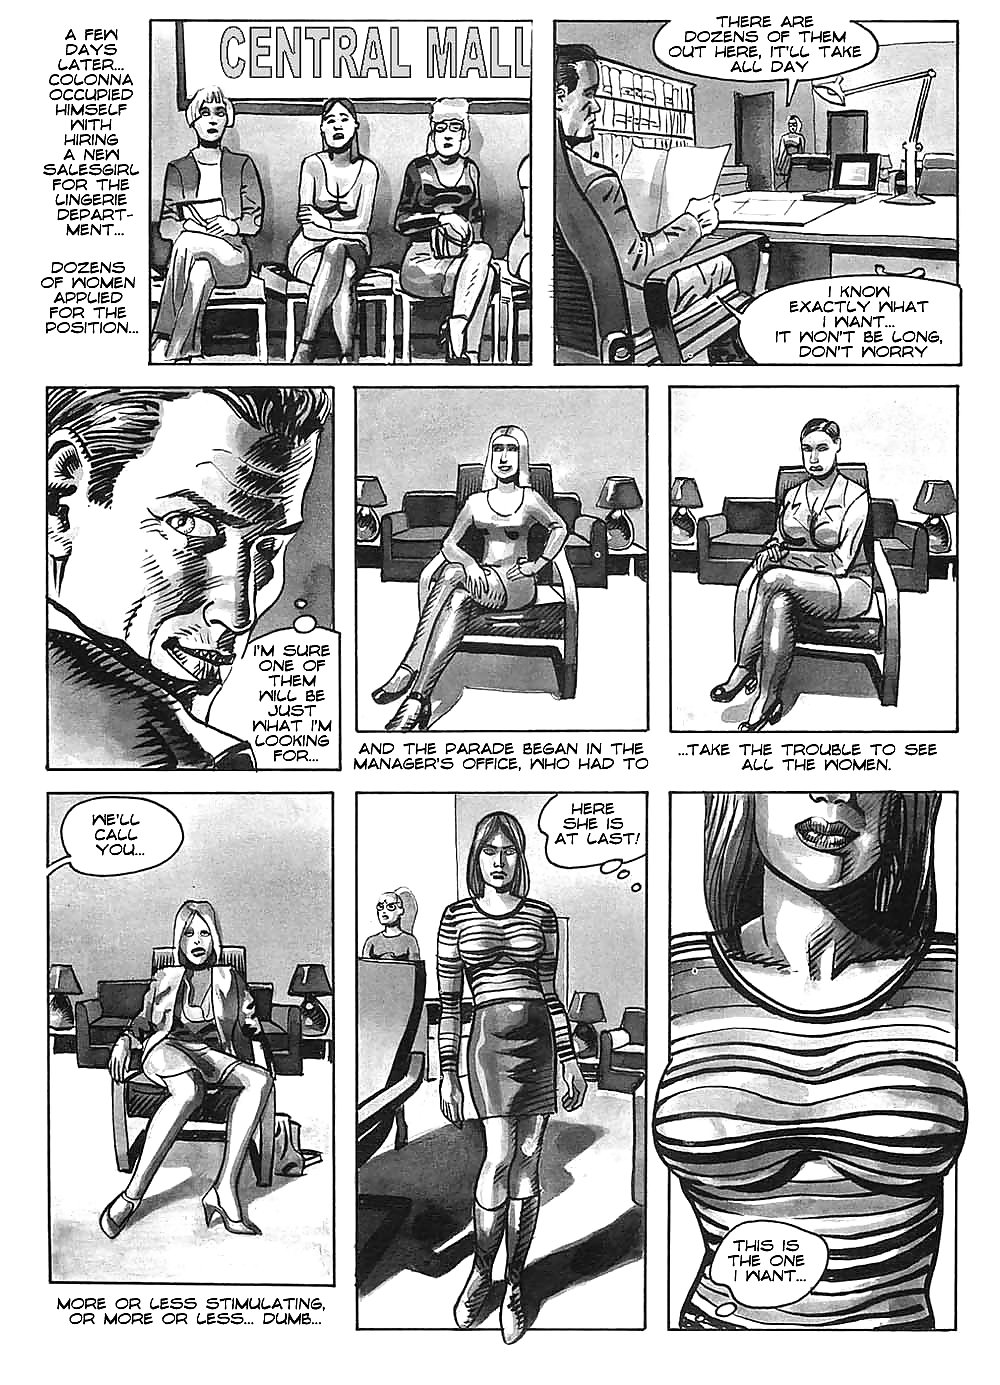 Hot comics 52 #19539577